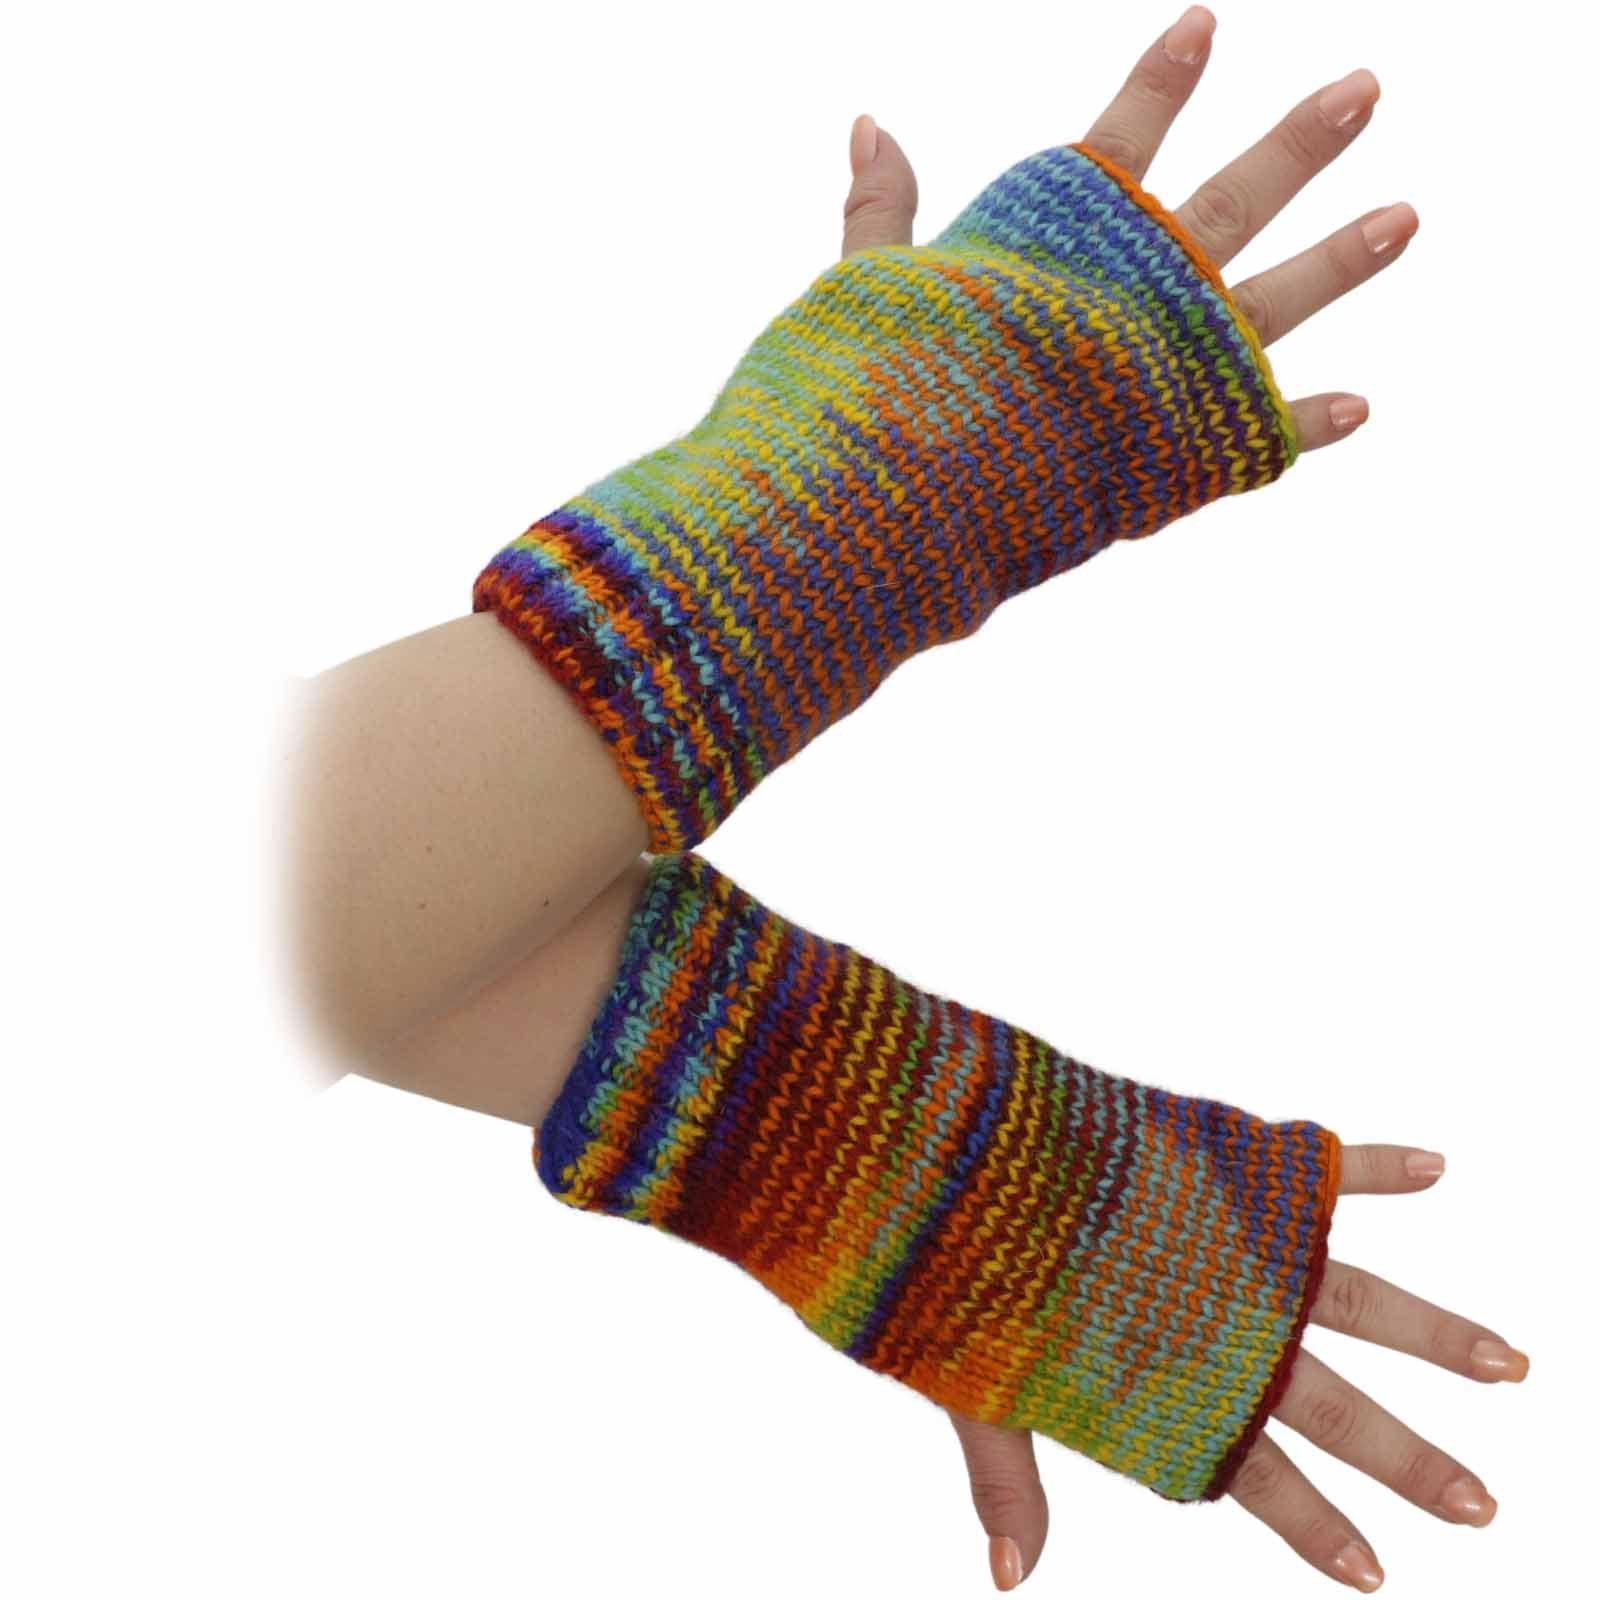 Strick UND Handschuhe Armstulpen Hand-/Pulswärmer Wolle Bunte Regenbogen KUNST MAGIE Armstulpen